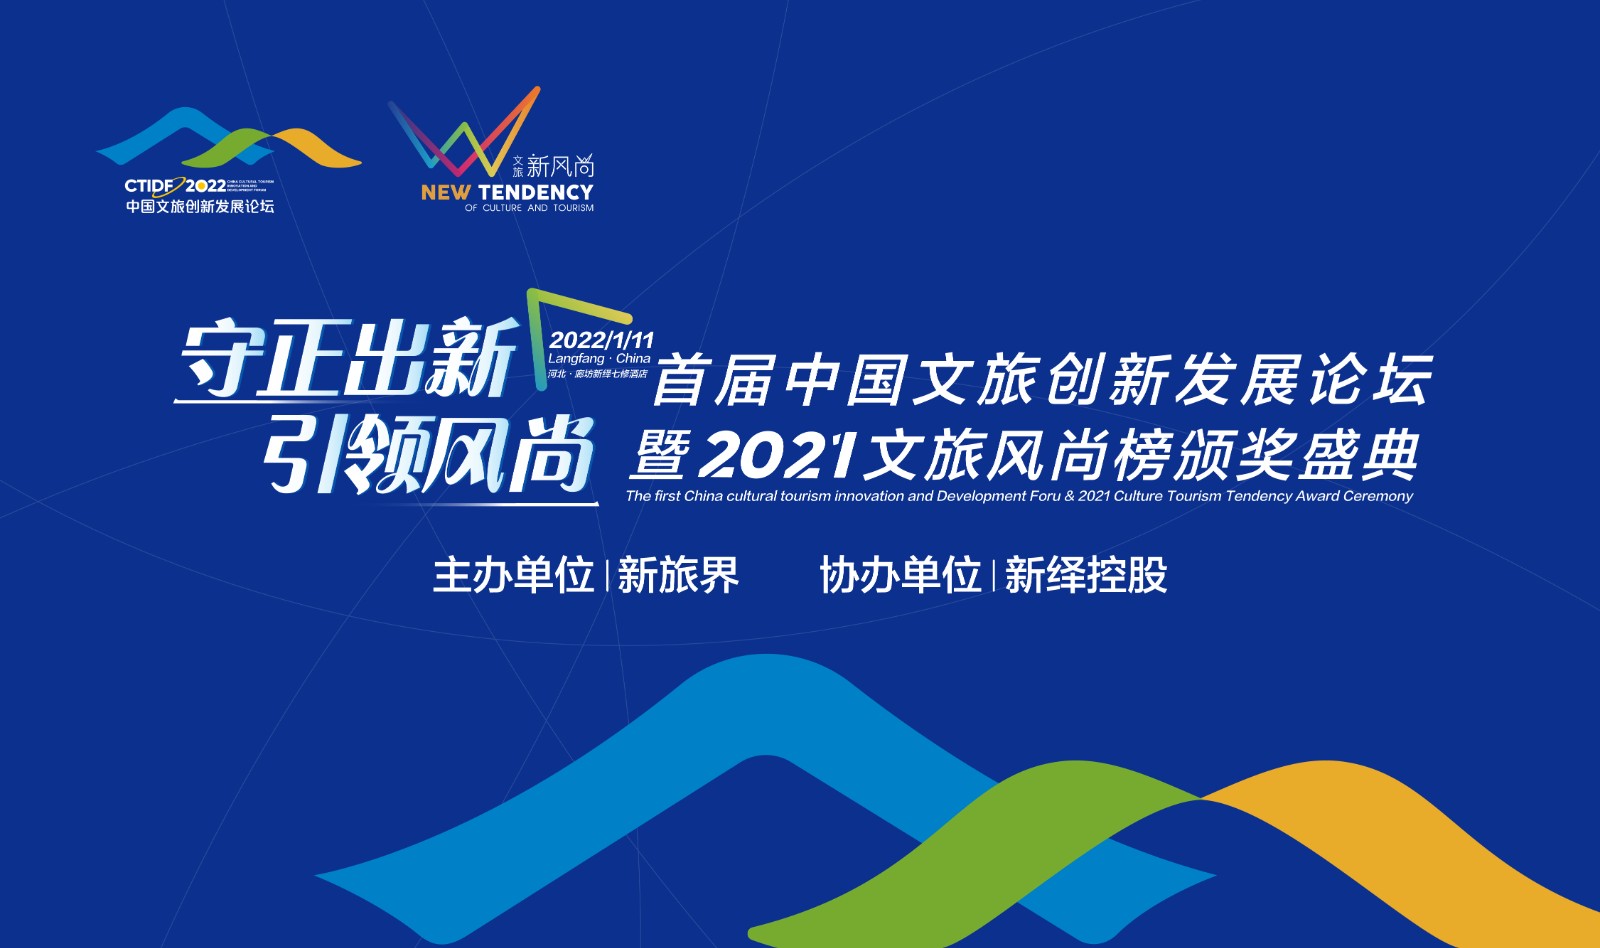 首届中国文旅创新发展论坛暨2021文旅风尚榜颁奖盛典